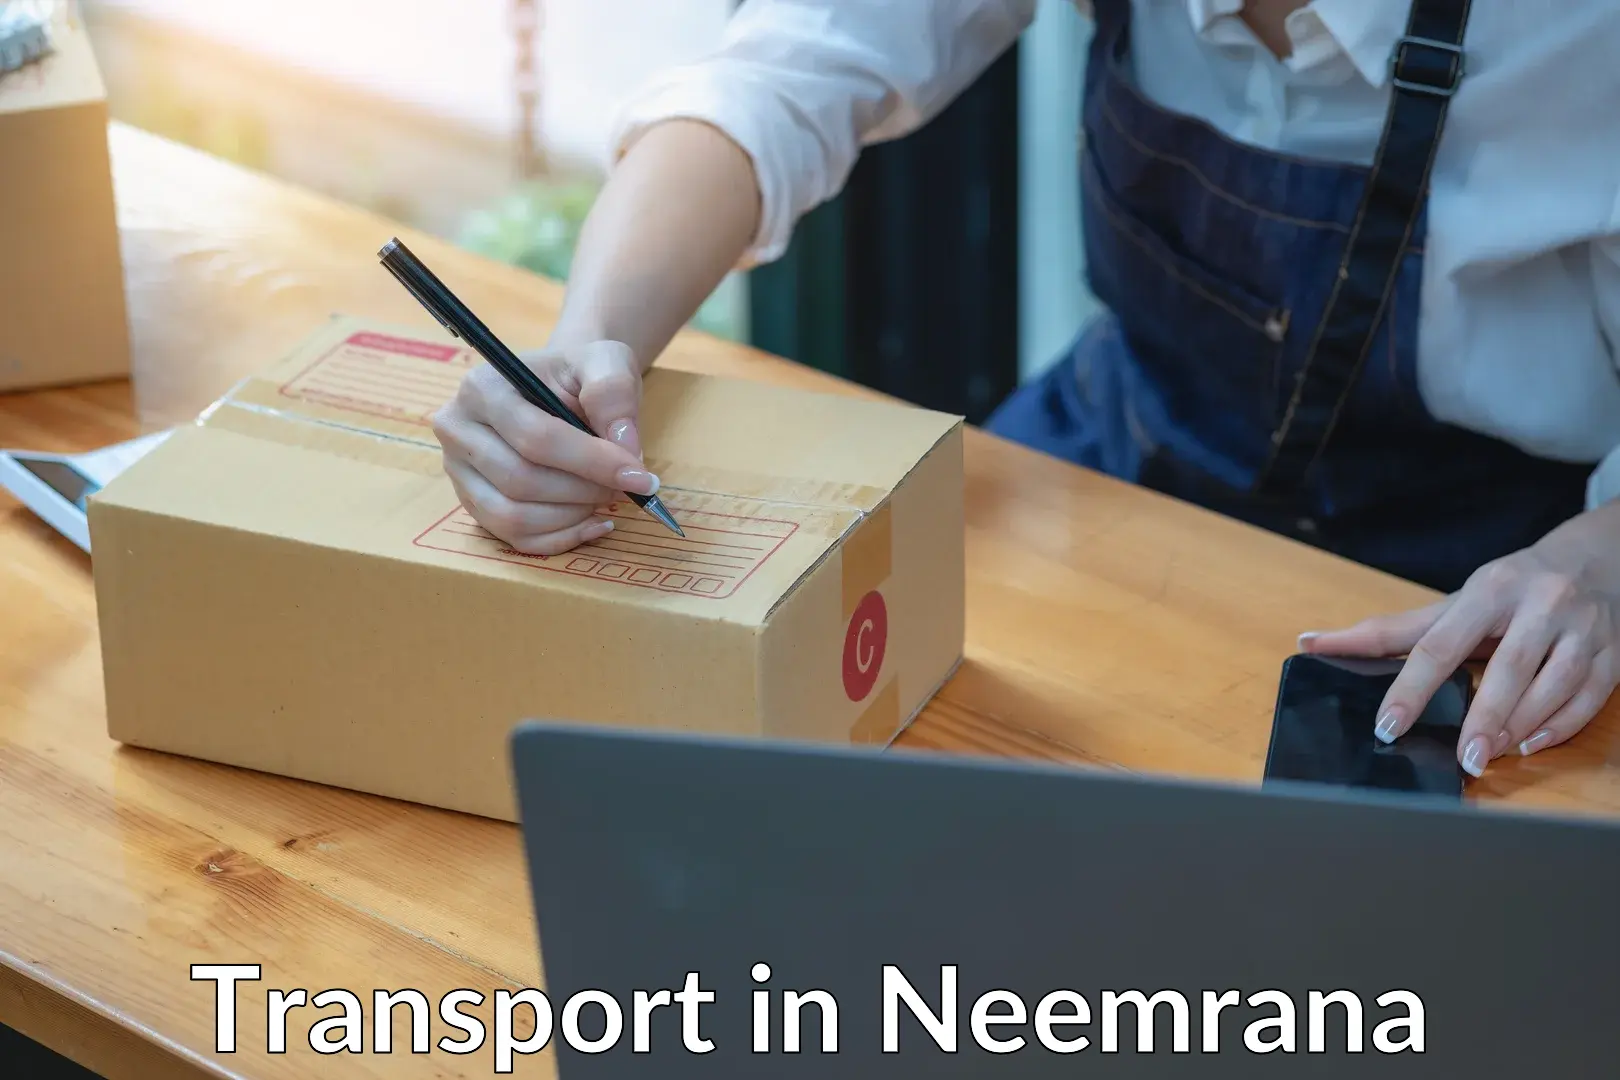 Furniture transport service in Neemrana